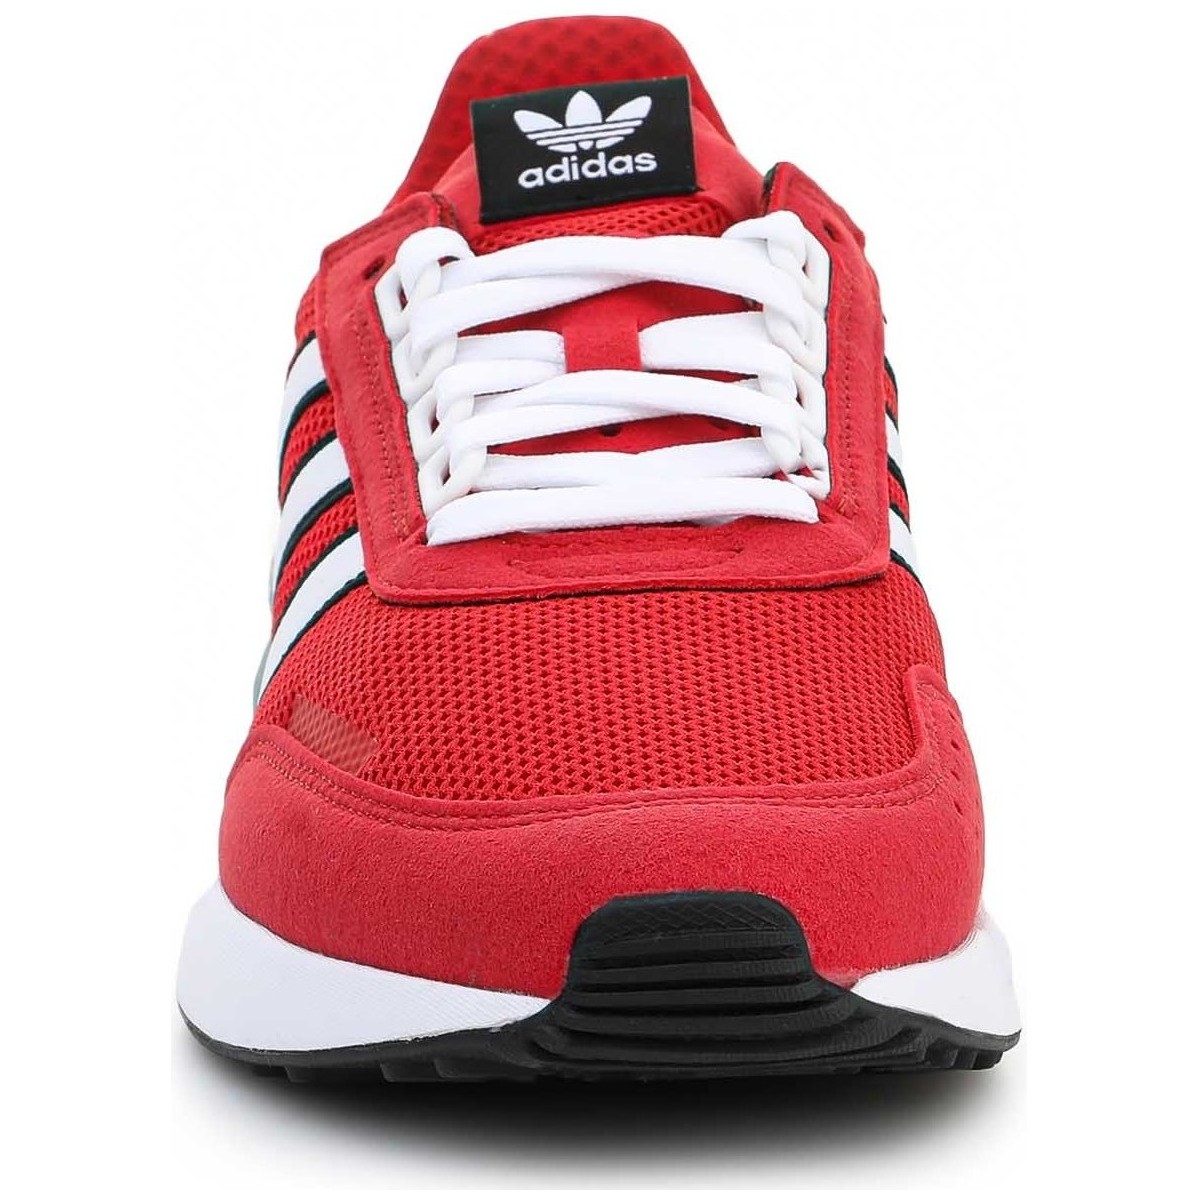 adidas Originals Rouge Adidas RETROSET FW4869 9AK8eHdA